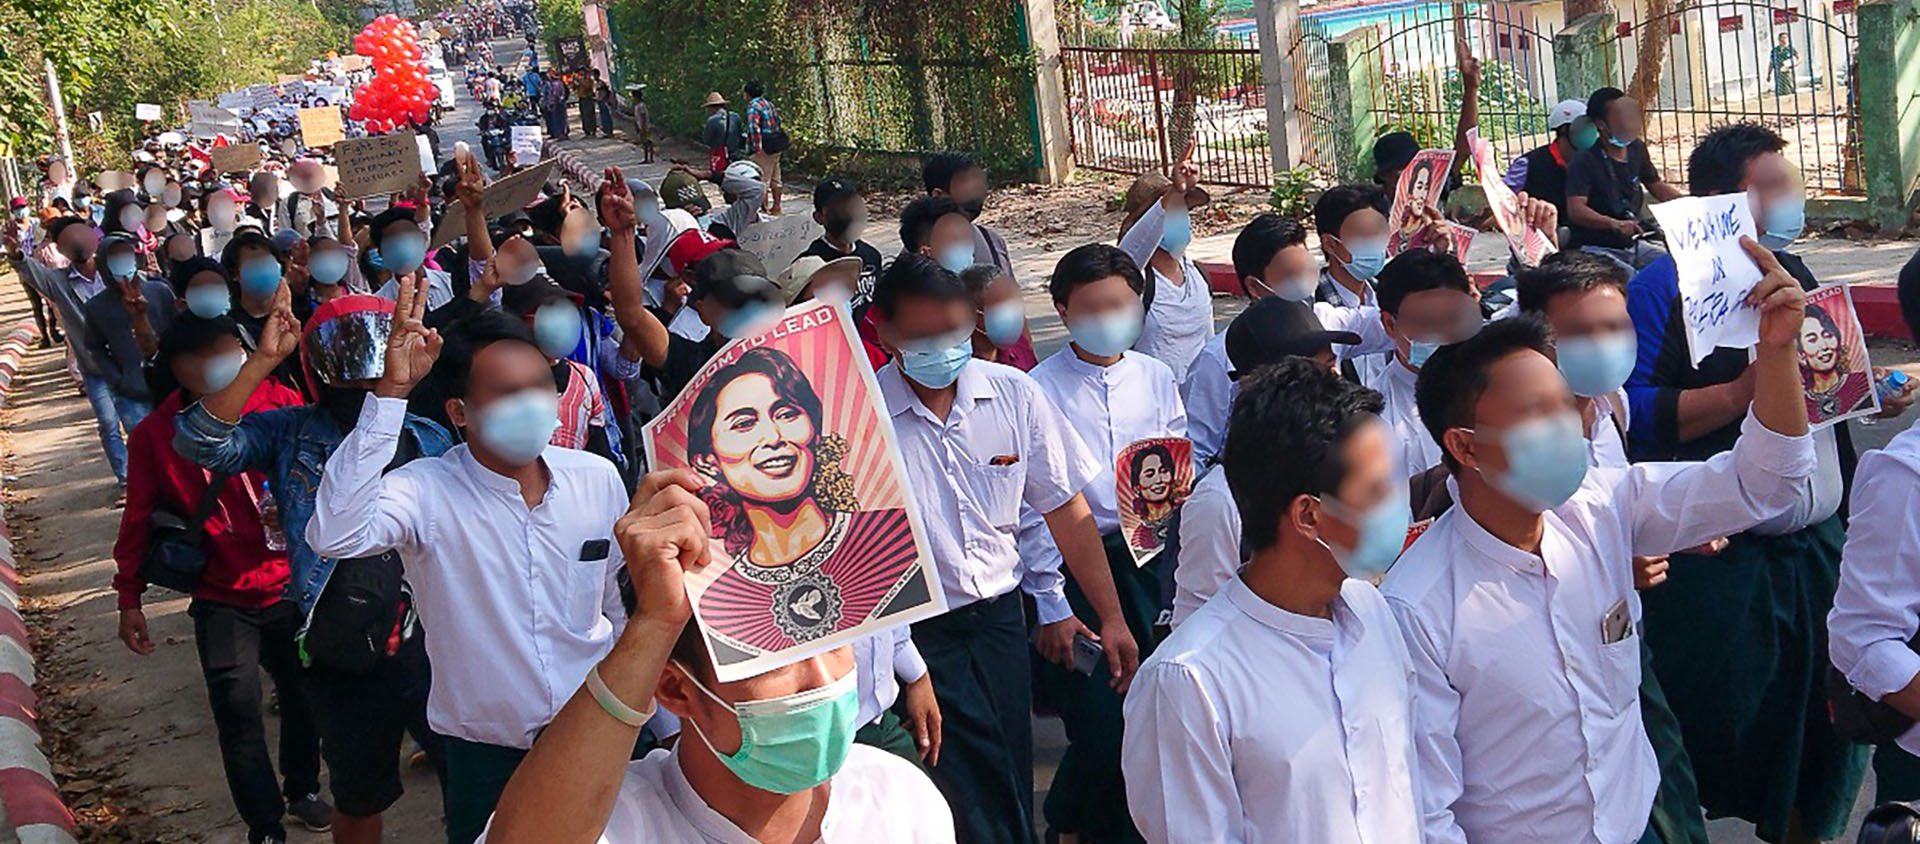 Les manifestations ont été sévèrement réprimées par l'armée birmane qui a effectué des raids dans de nombreux temples et églises | © Eglise d'Asie